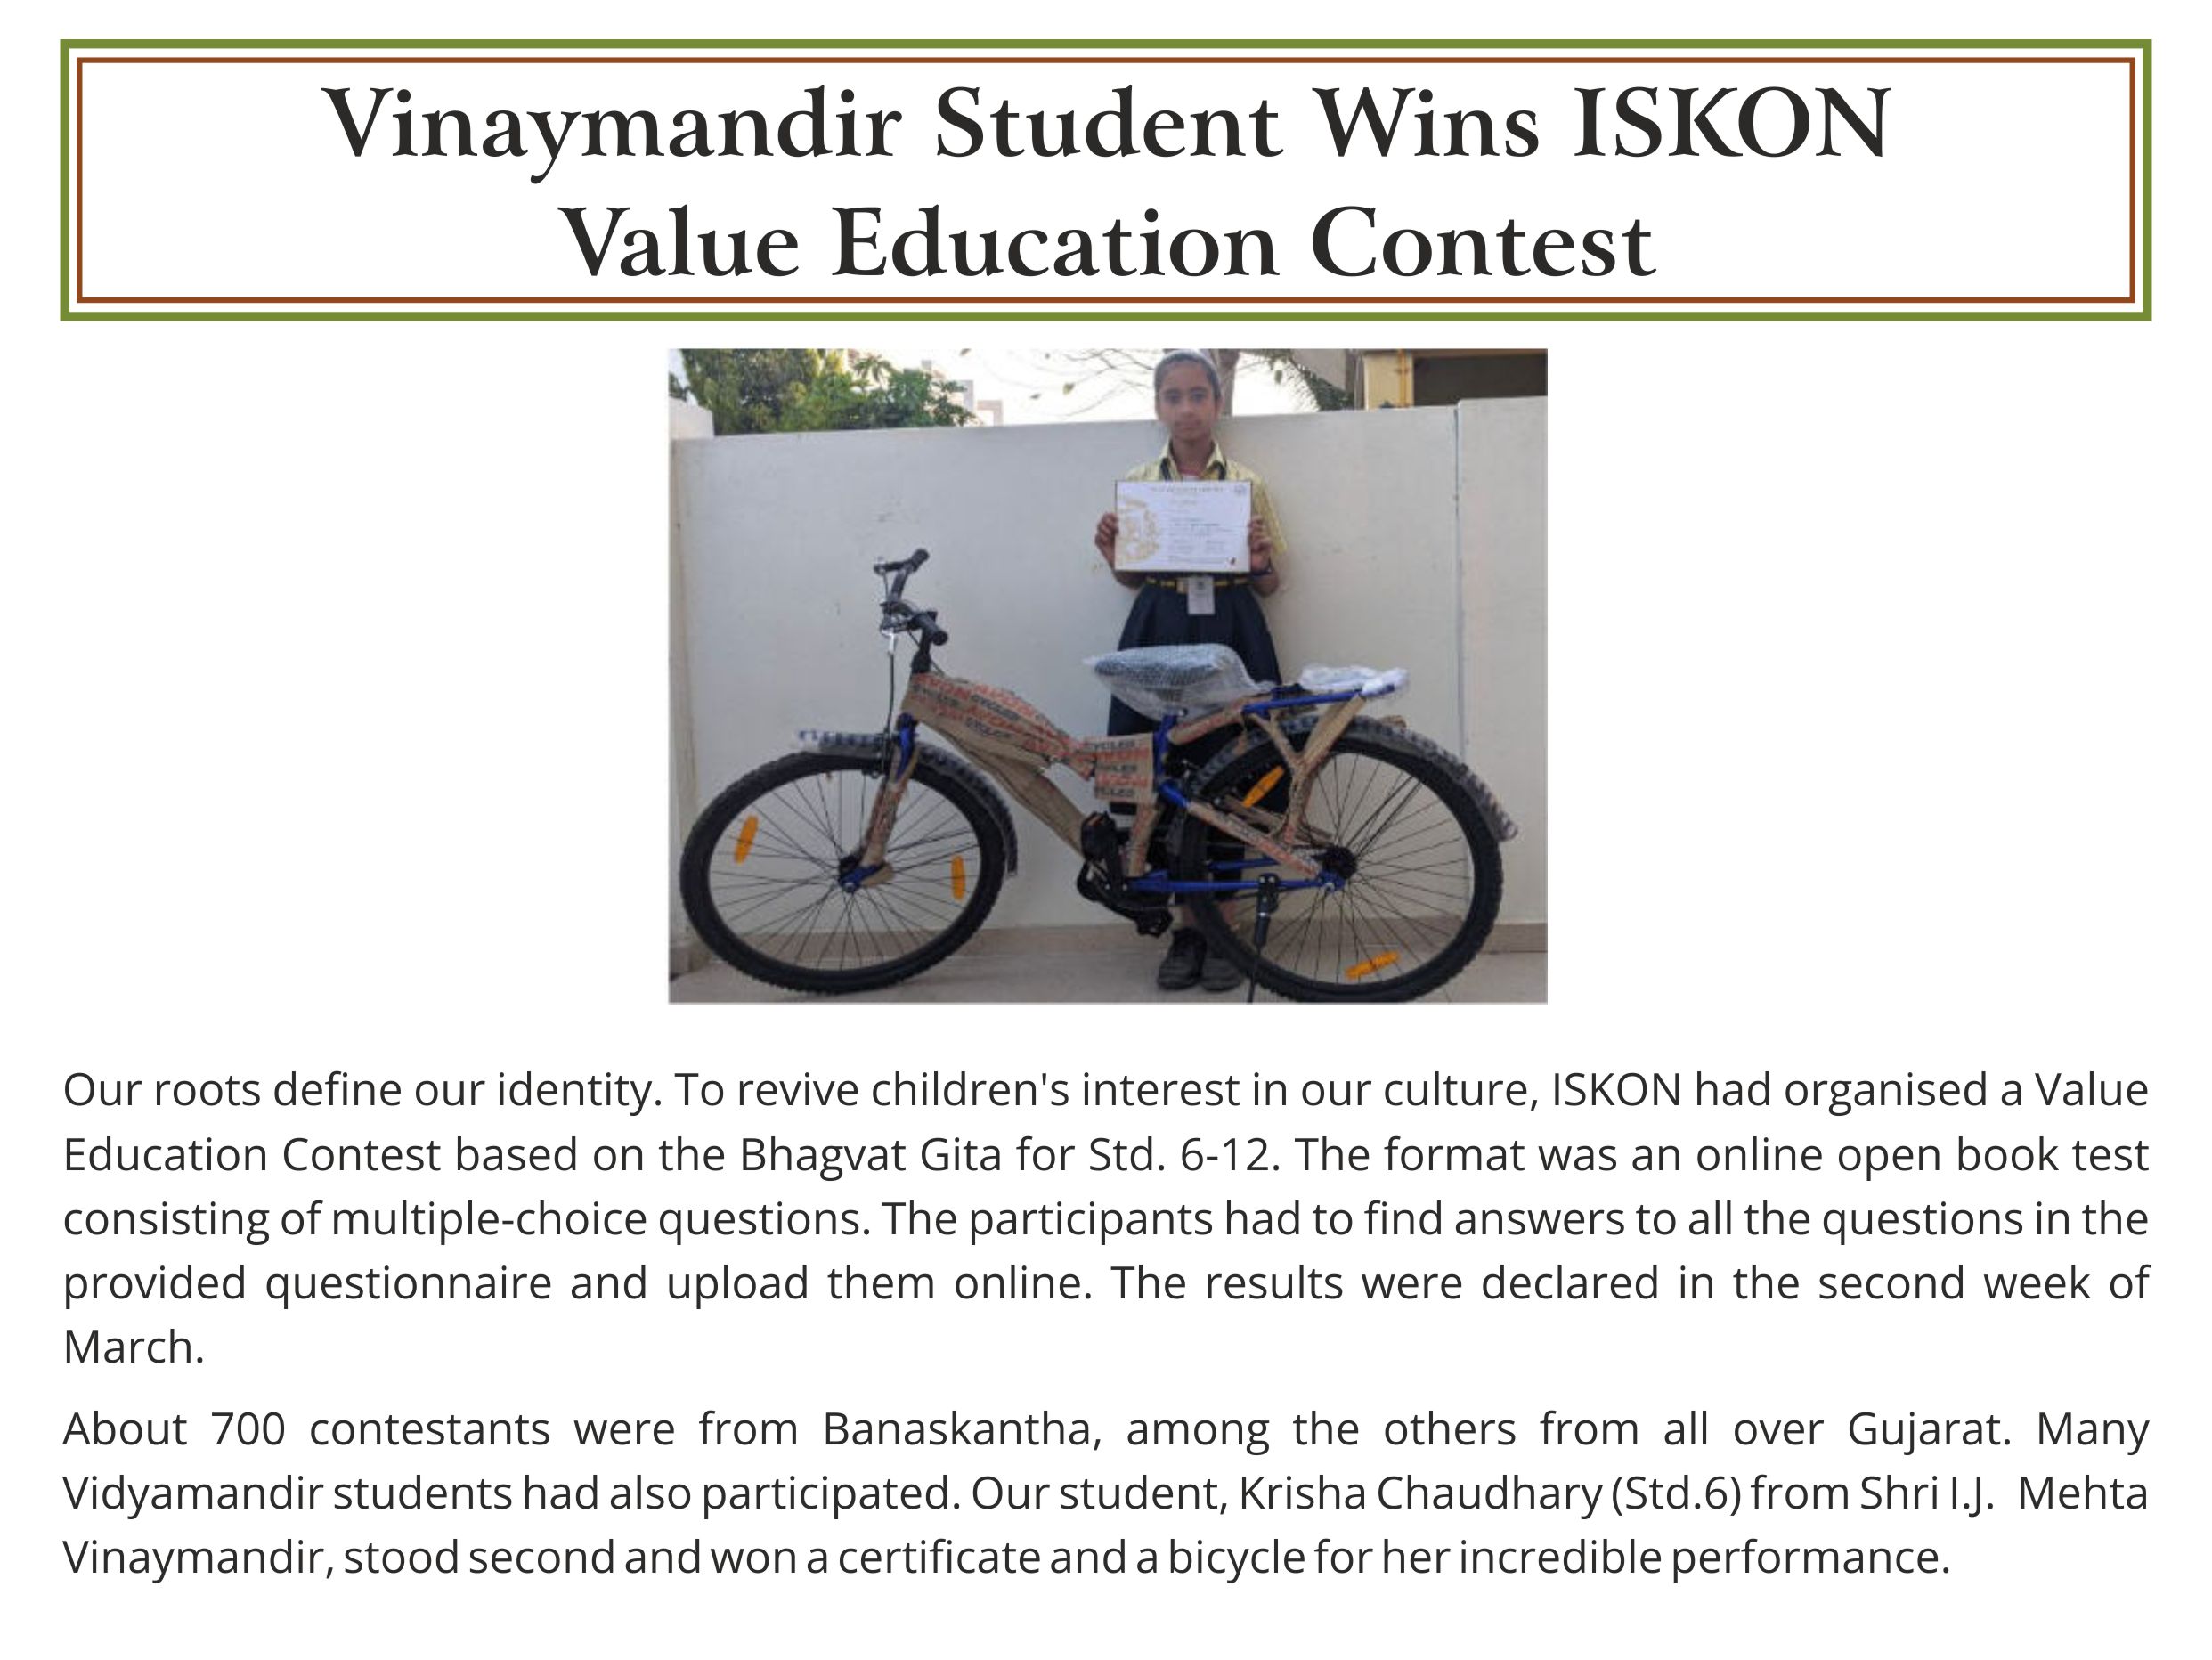 Krisha Chaudhary - Vidyamandir Student Award